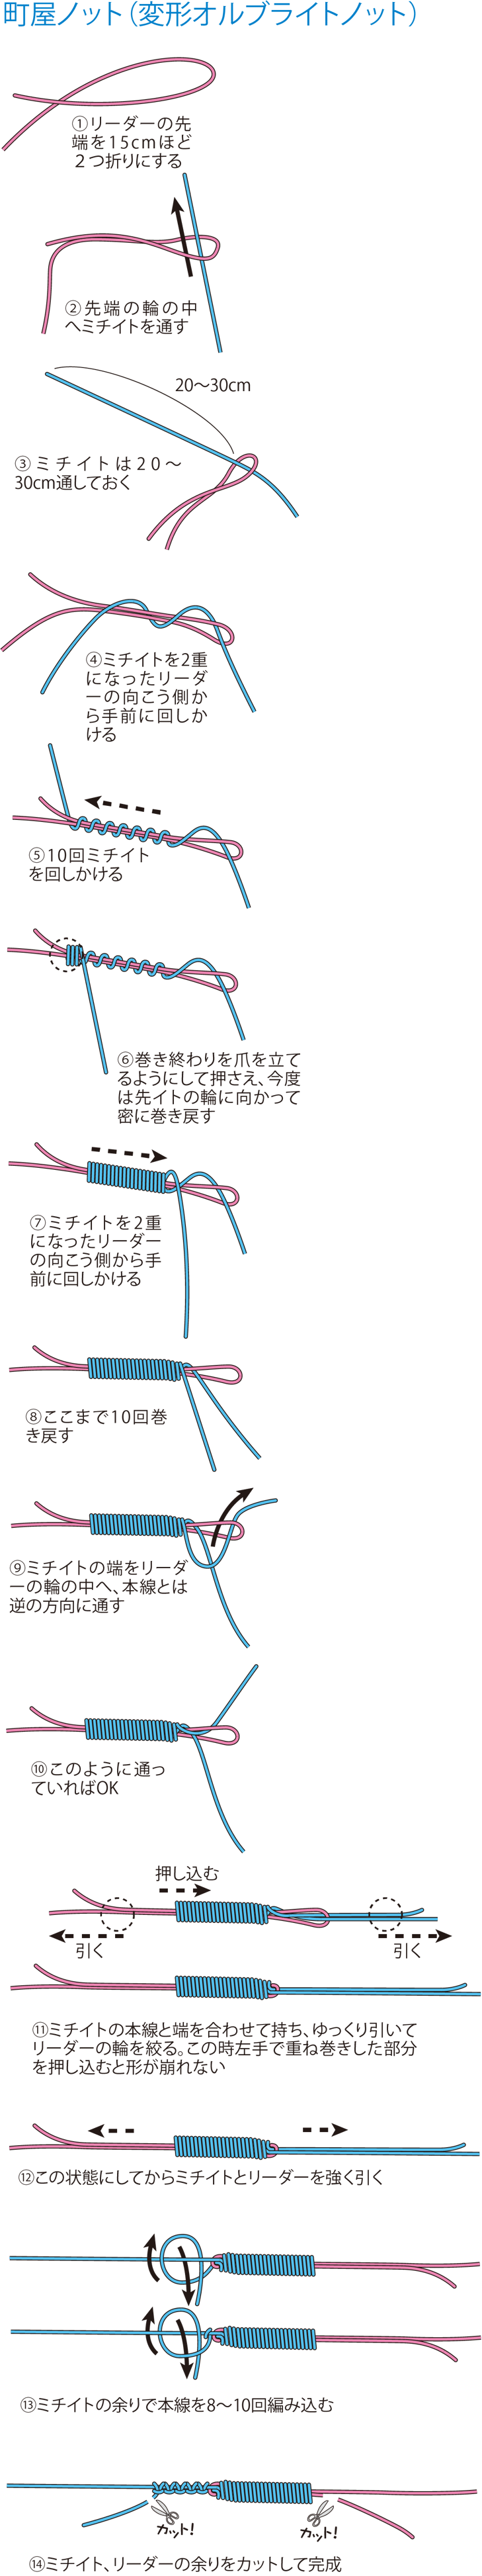 釣り糸とリーダーの結び方 どれが最強 基本の結びを強度実験も交えて解説 第3回 Peラインとリーダーの結び方編 魚種別釣りガイド